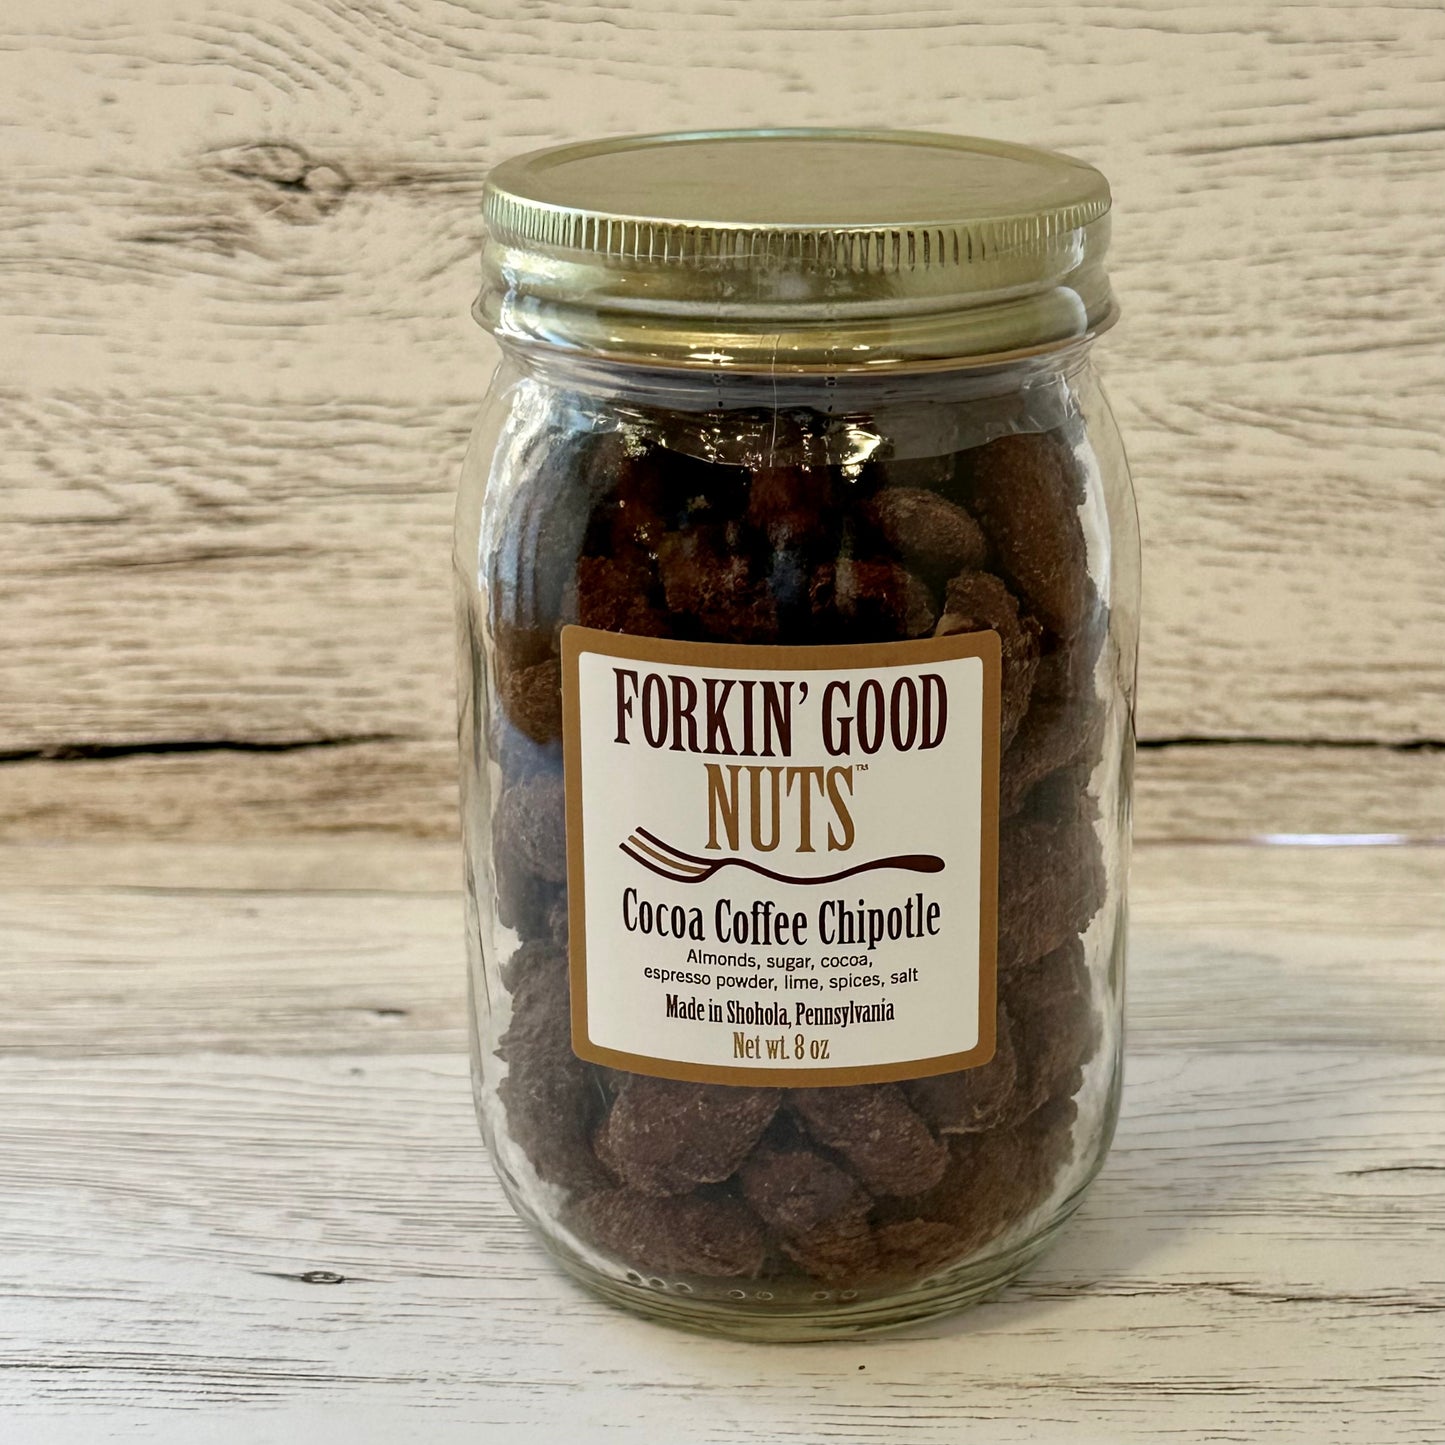 Cocoa Coffee Chipotle Flavored Almonds